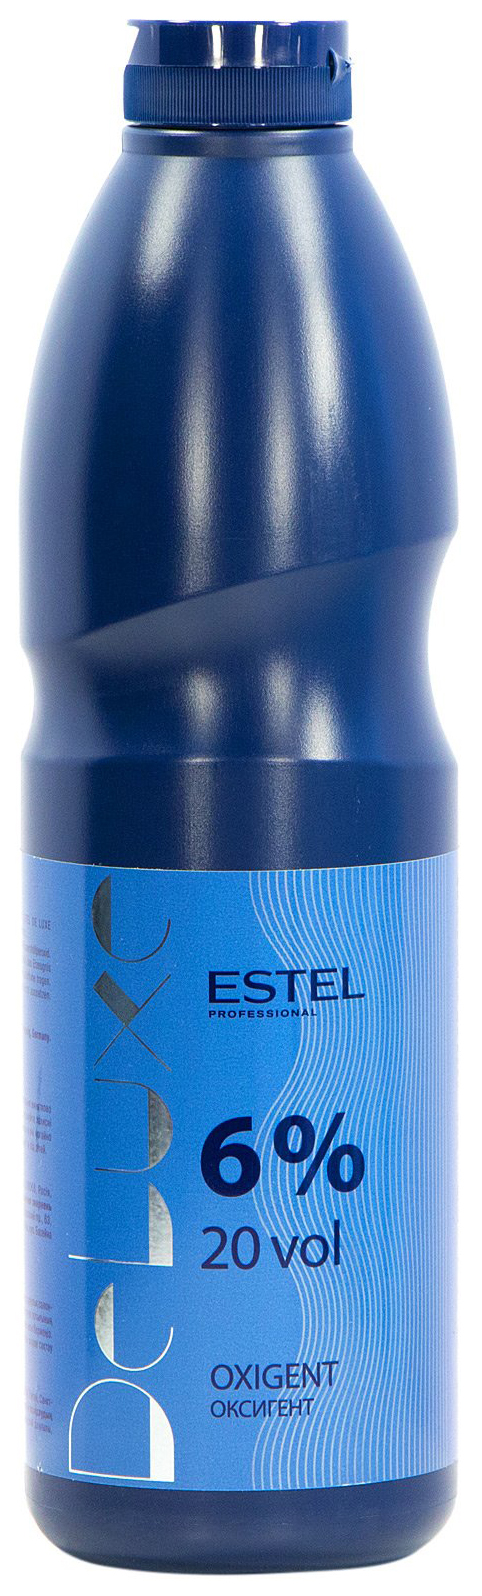 Проявитель Estel Professional De Luxe Oxigent 6% 900 мл estel professional набор для химической завивки для трудноподдающихся волос 2 100 мл